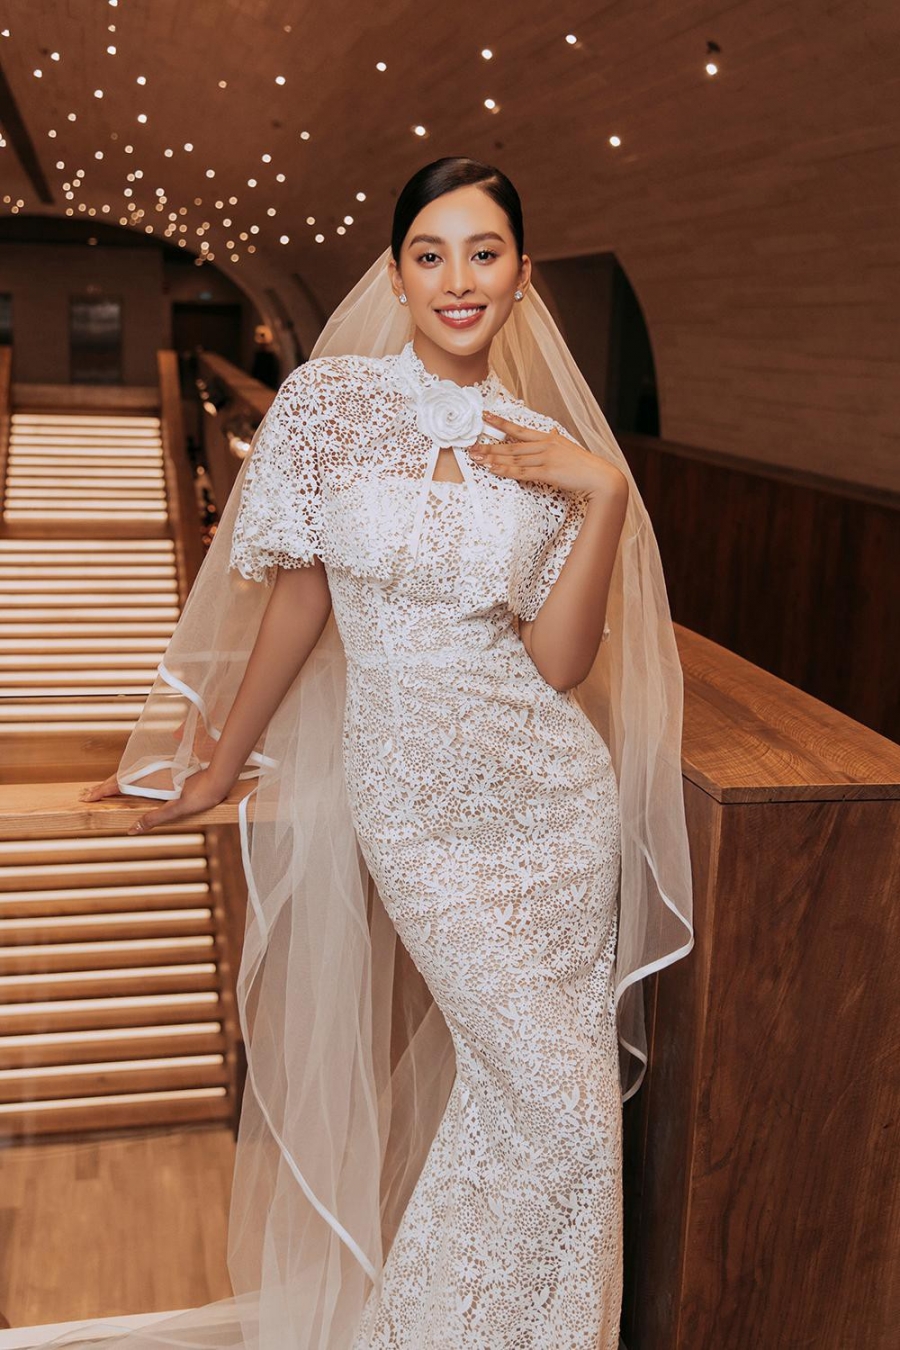 Hoa hậu Tiểu Vy là cô dâu tiếp theo của showbiz sau Minh Hằng, Khánh Thi - Ảnh 4